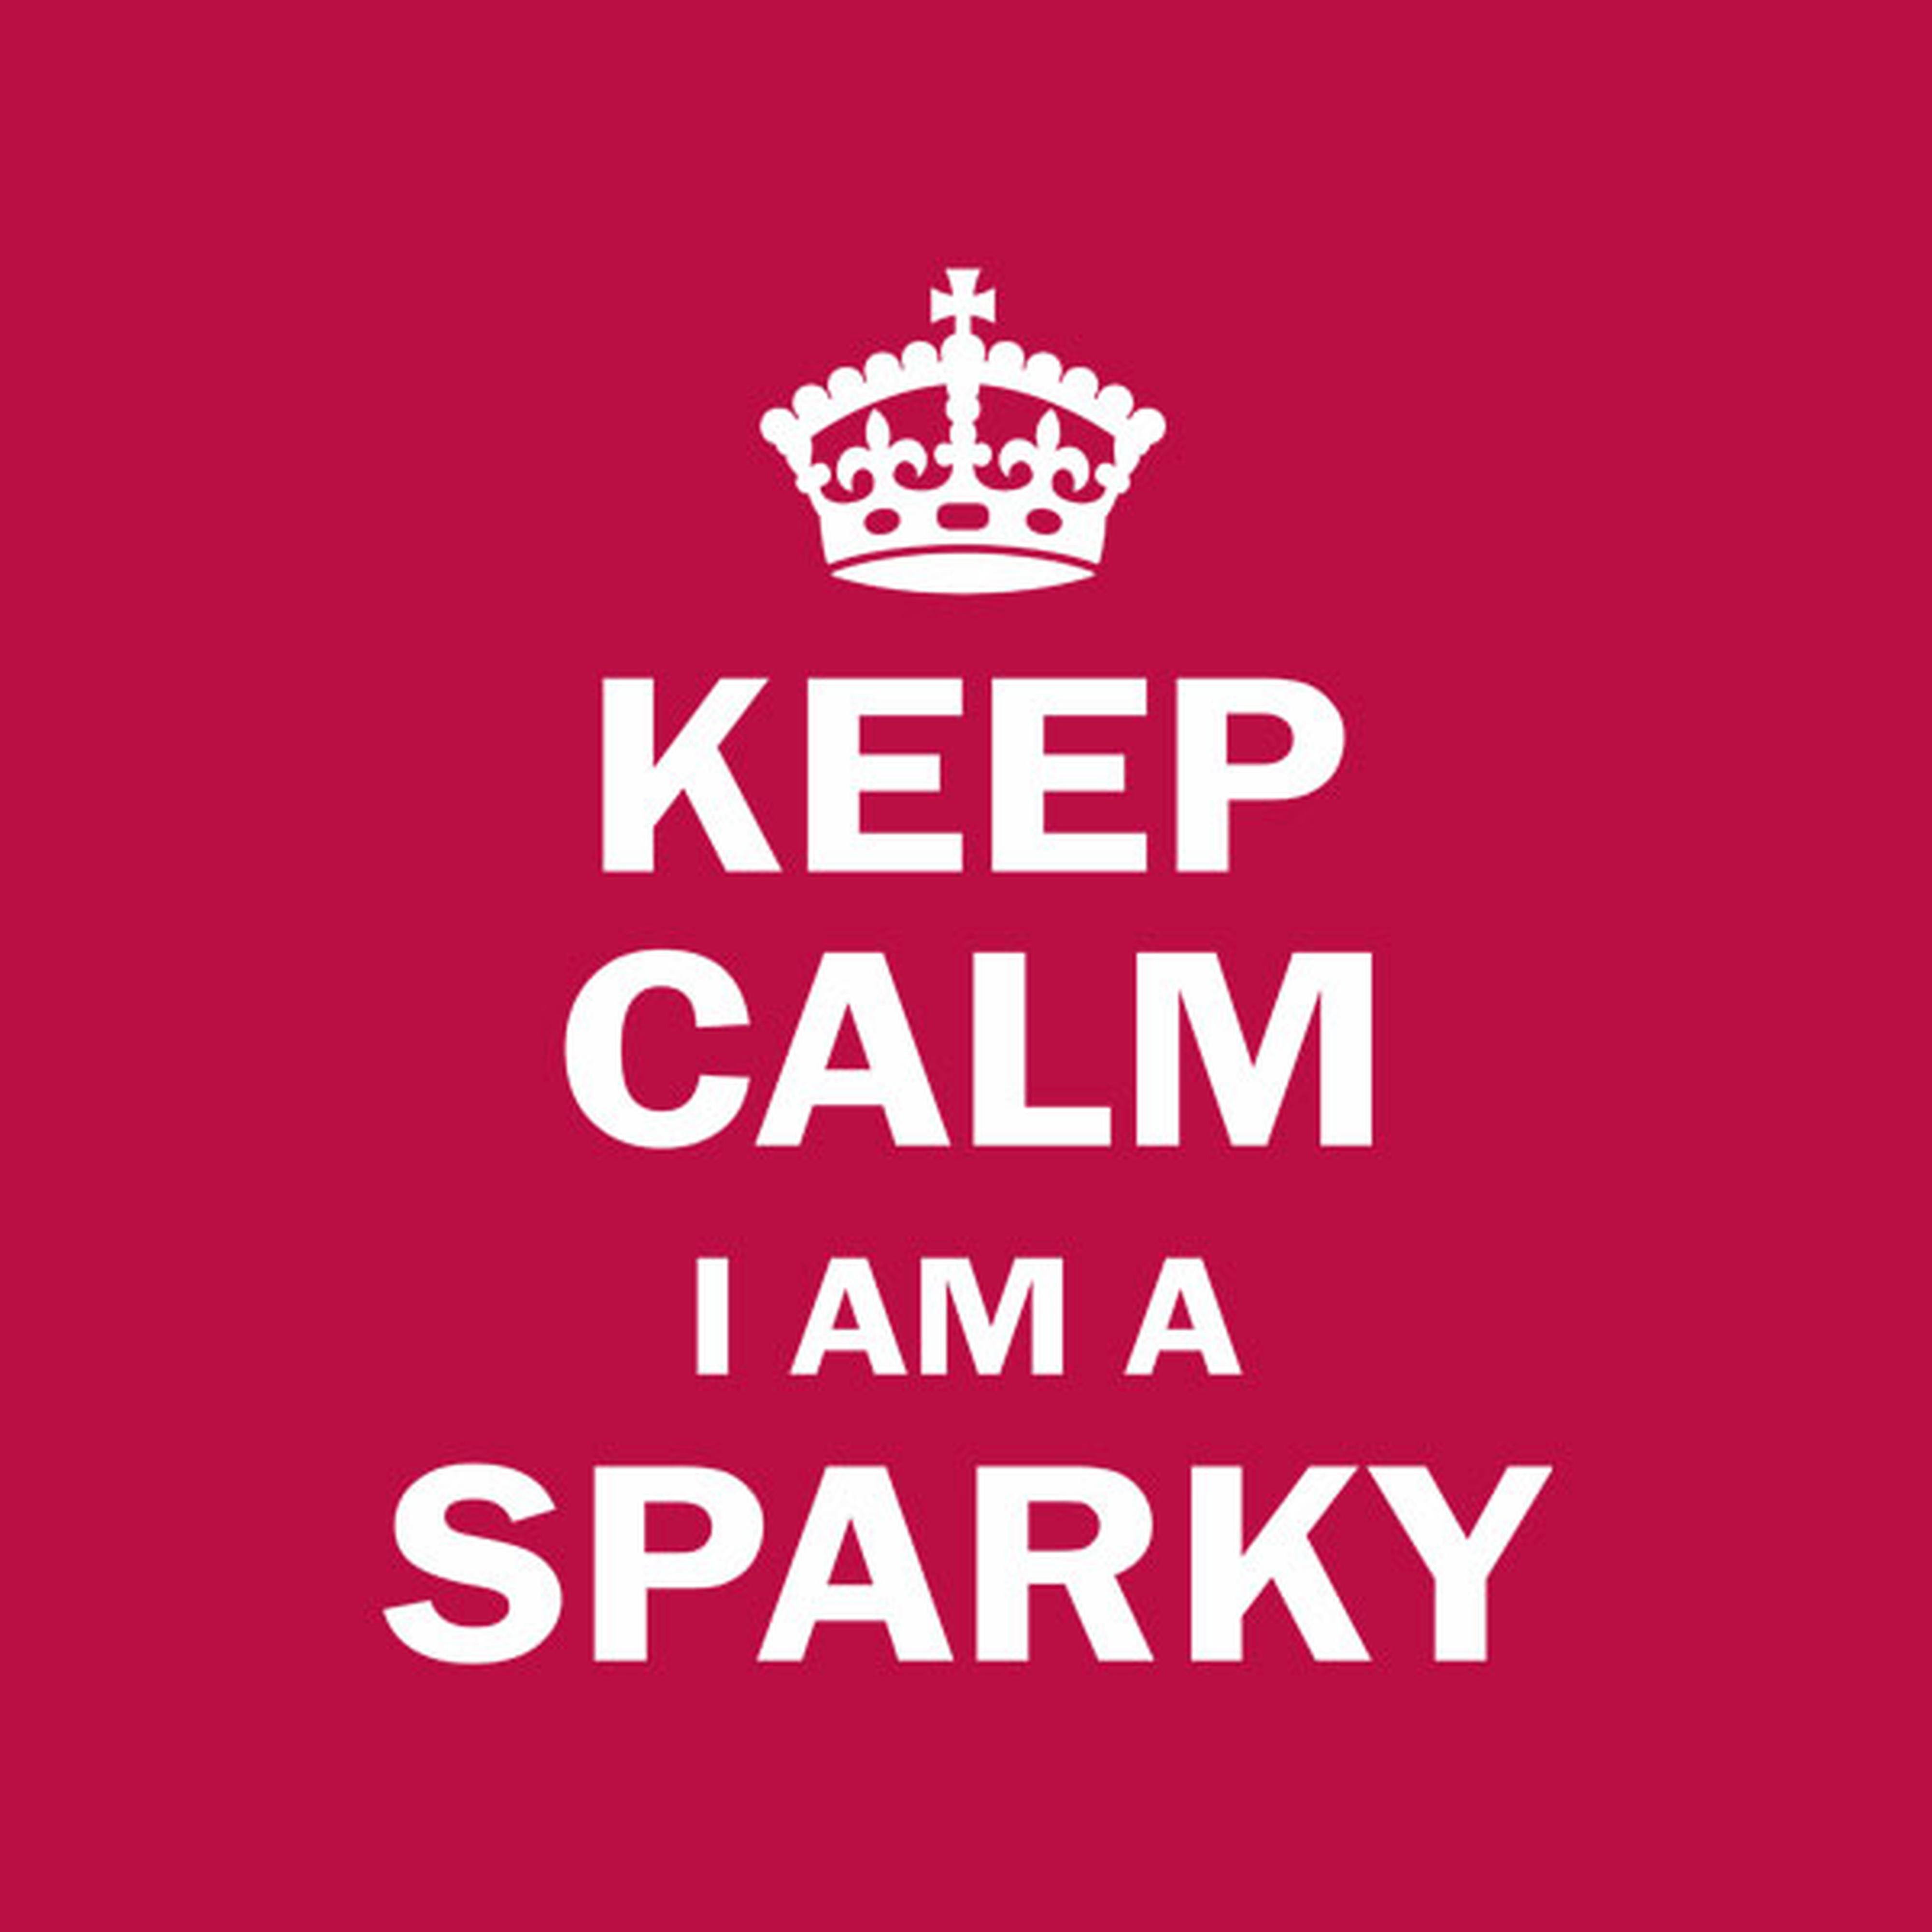 Keep calm. I am a sparky - T-shirt